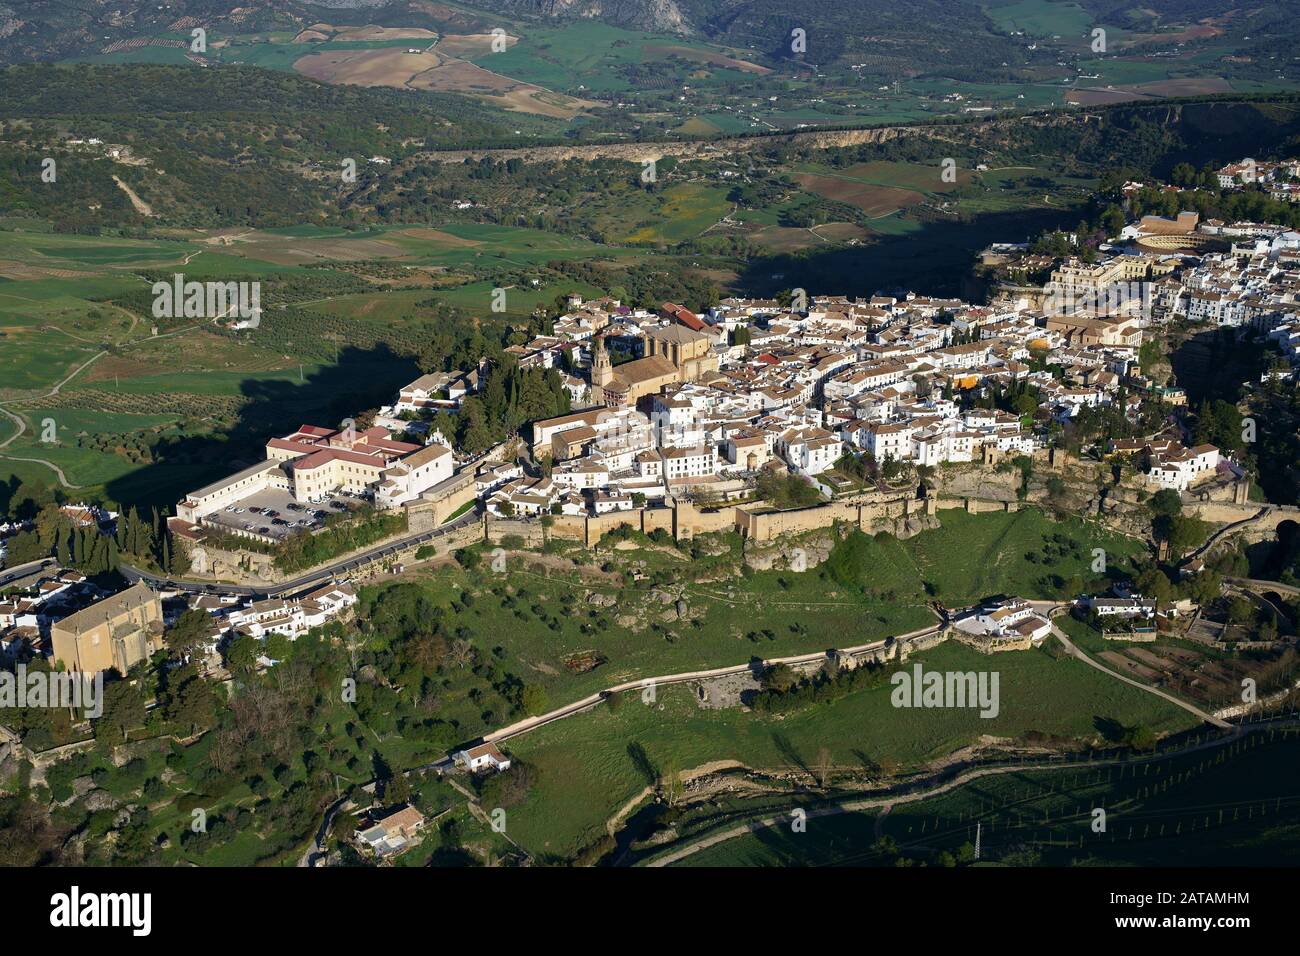 VUE AÉRIENNE.Vieille ville pittoresque sur une mesa.Ronda, Andalousie, Espagne. Banque D'Images